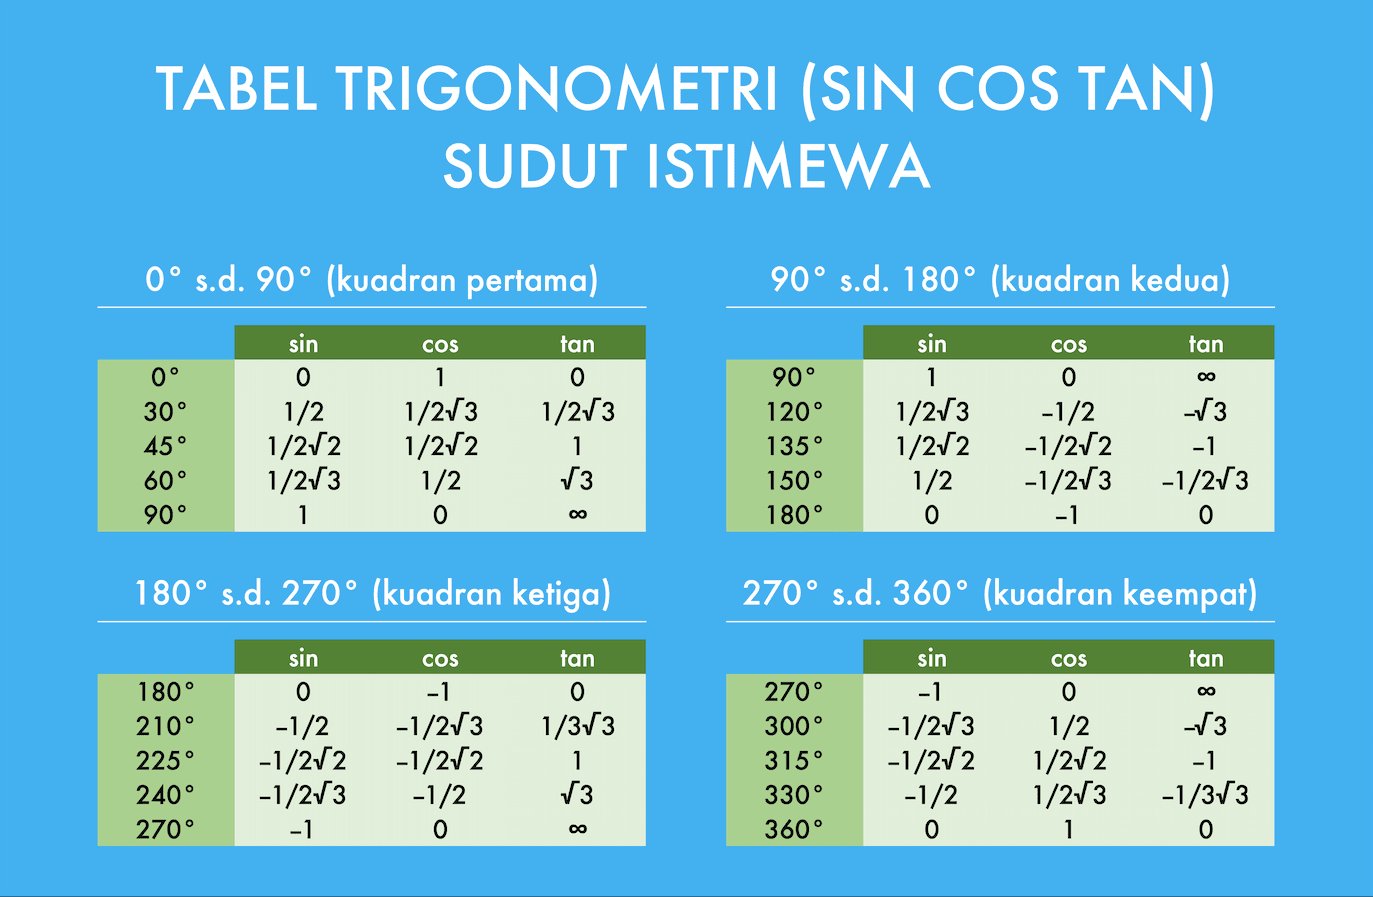 Tabel Trigonometri (Sin Cos Tan) Lengkap 0-360 Derajat (Bisa Didownload) dan Cara Mempelajarinya - Screenshot Tabel Trigonometri untuk Sudut Istimewa Compute Expert